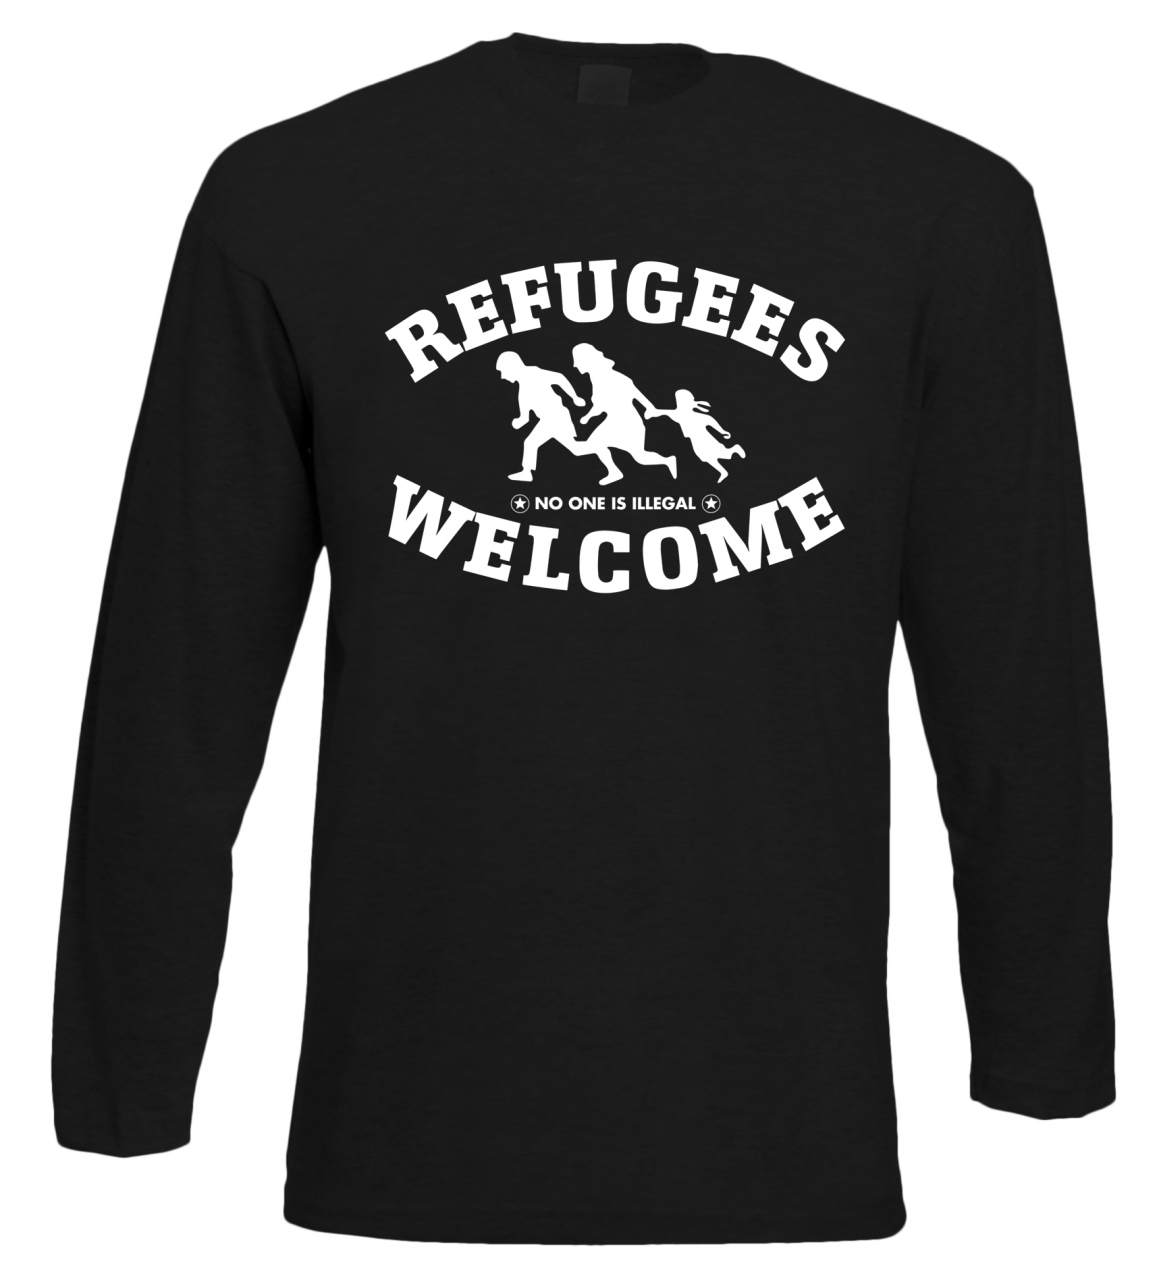  Refugees welcome Langarm Shirt Schwarz mit weißer Aufschrift - No one is illegal 